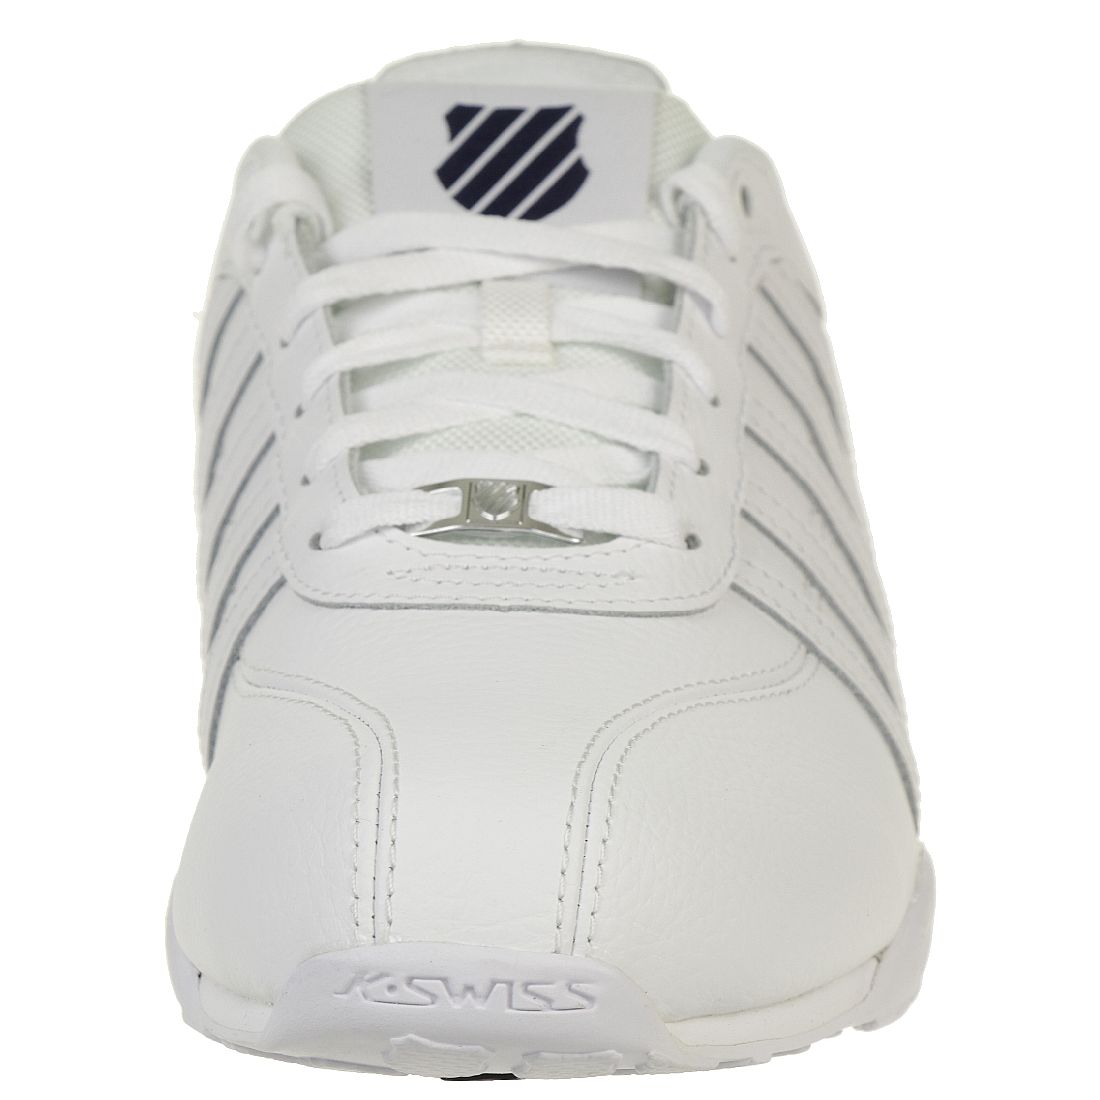 K-SWISS Arvee 1.5 Schuhe Sneaker weiss 02453-106-M